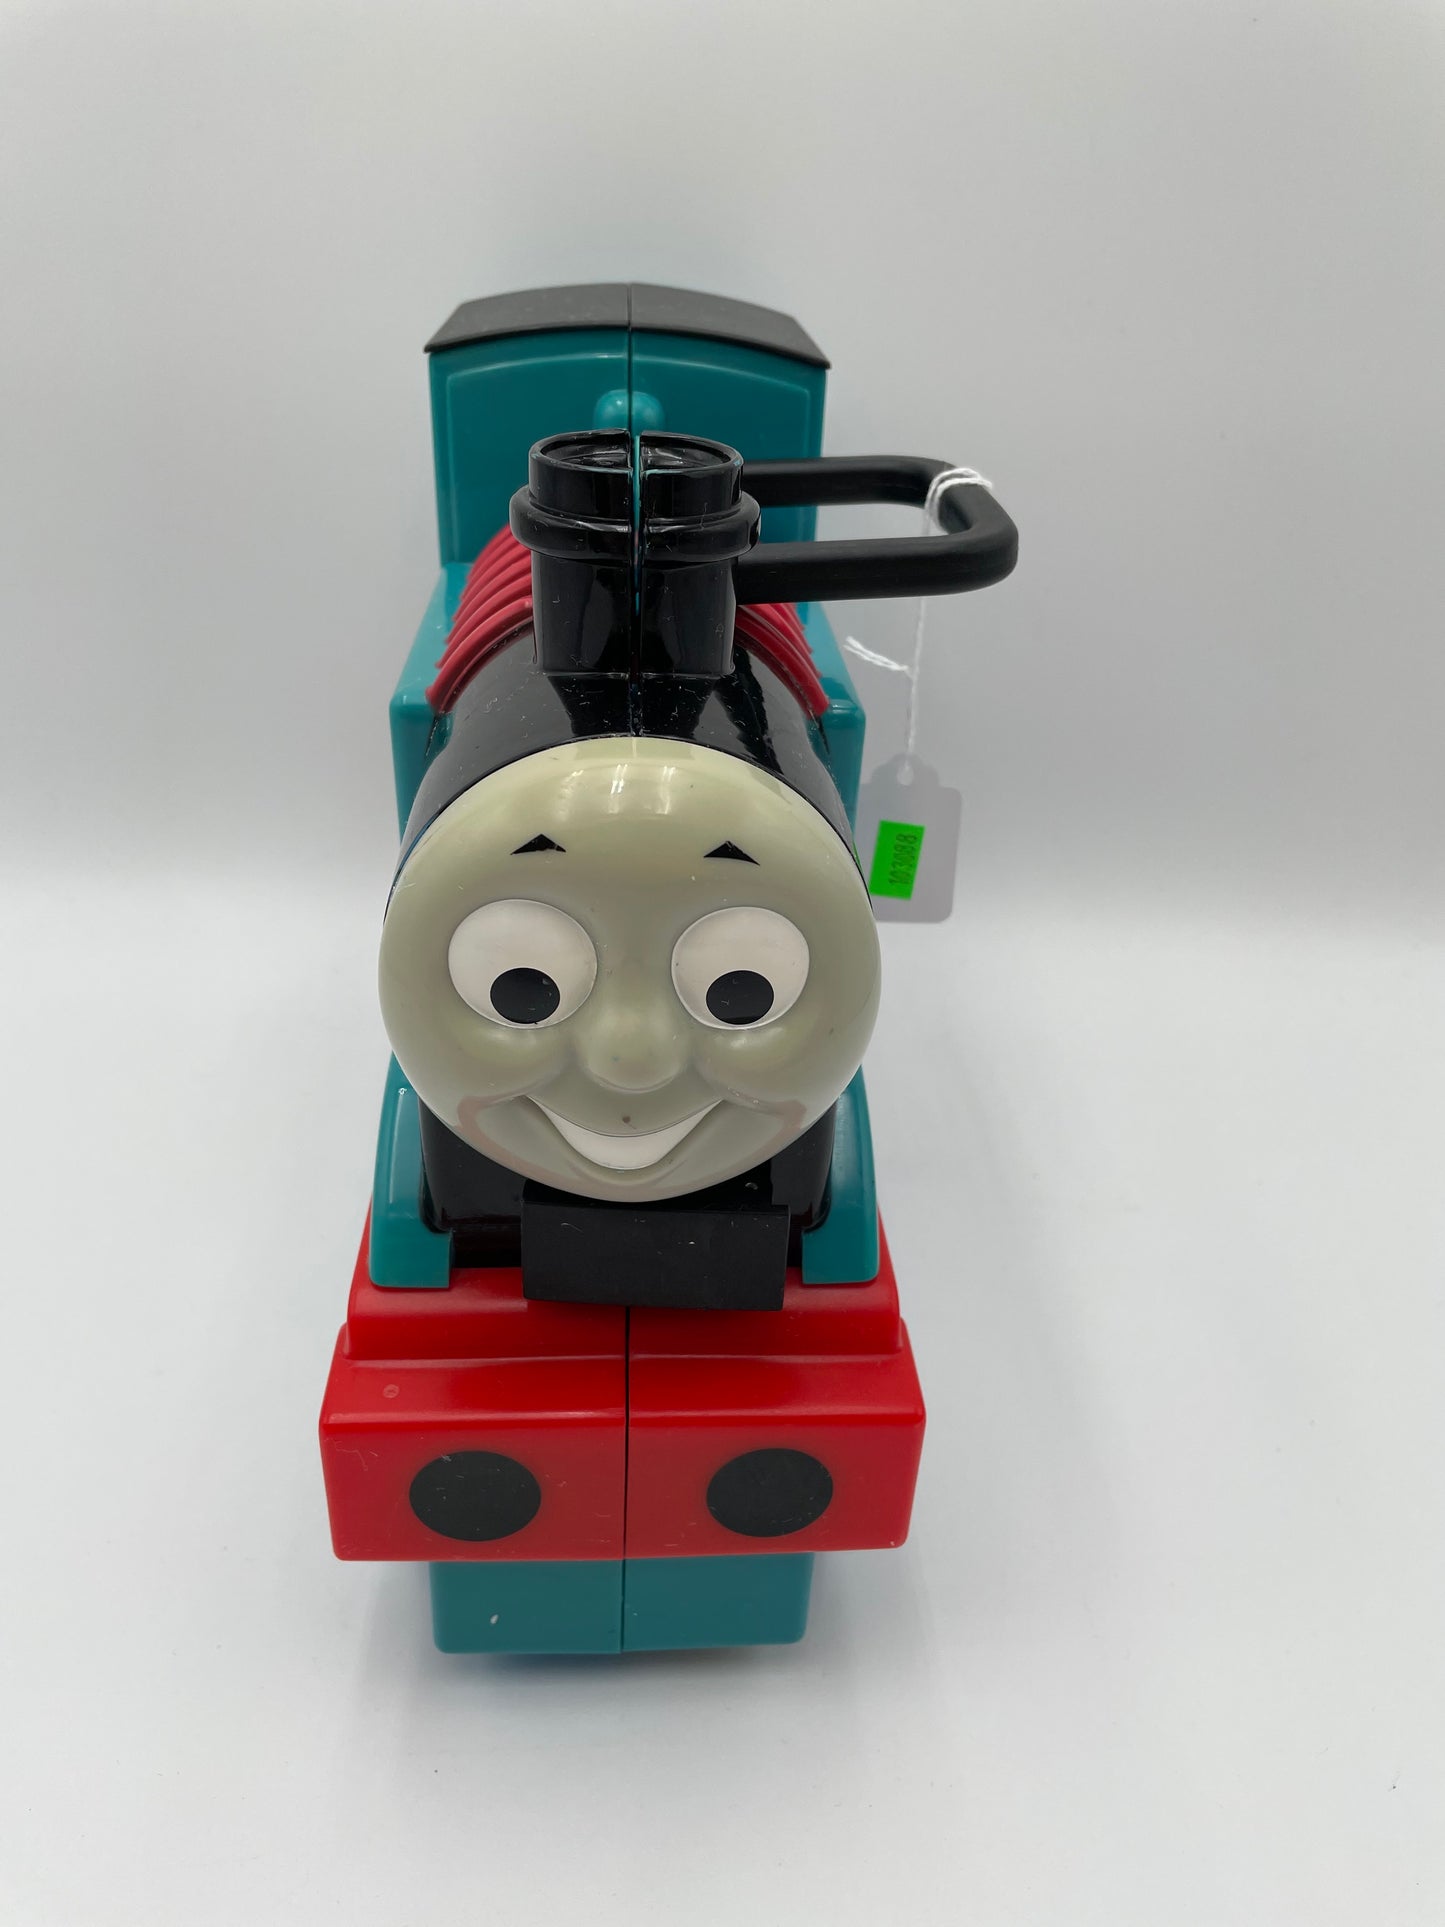 Thomas The Train - Storage Case #103088